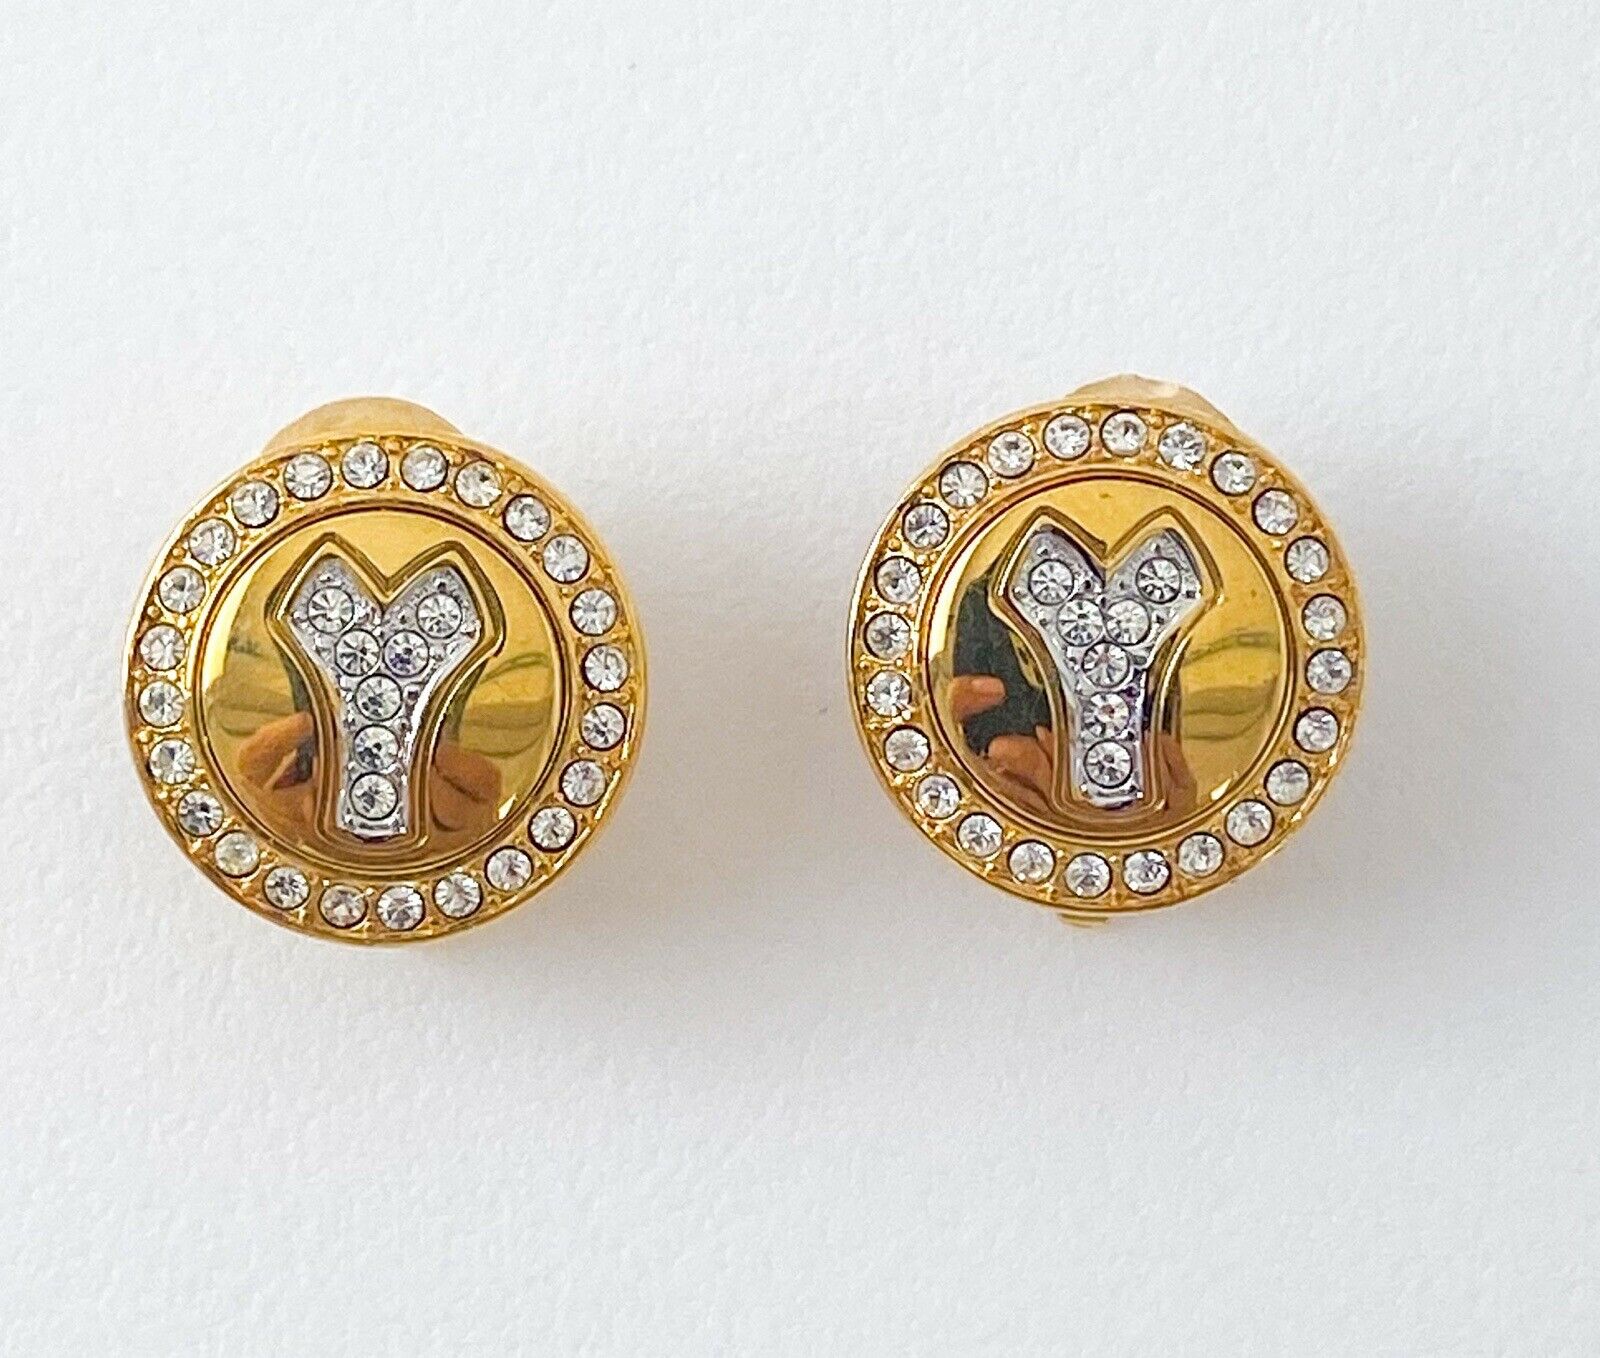 Vintage Yves Saint Laurent earrings